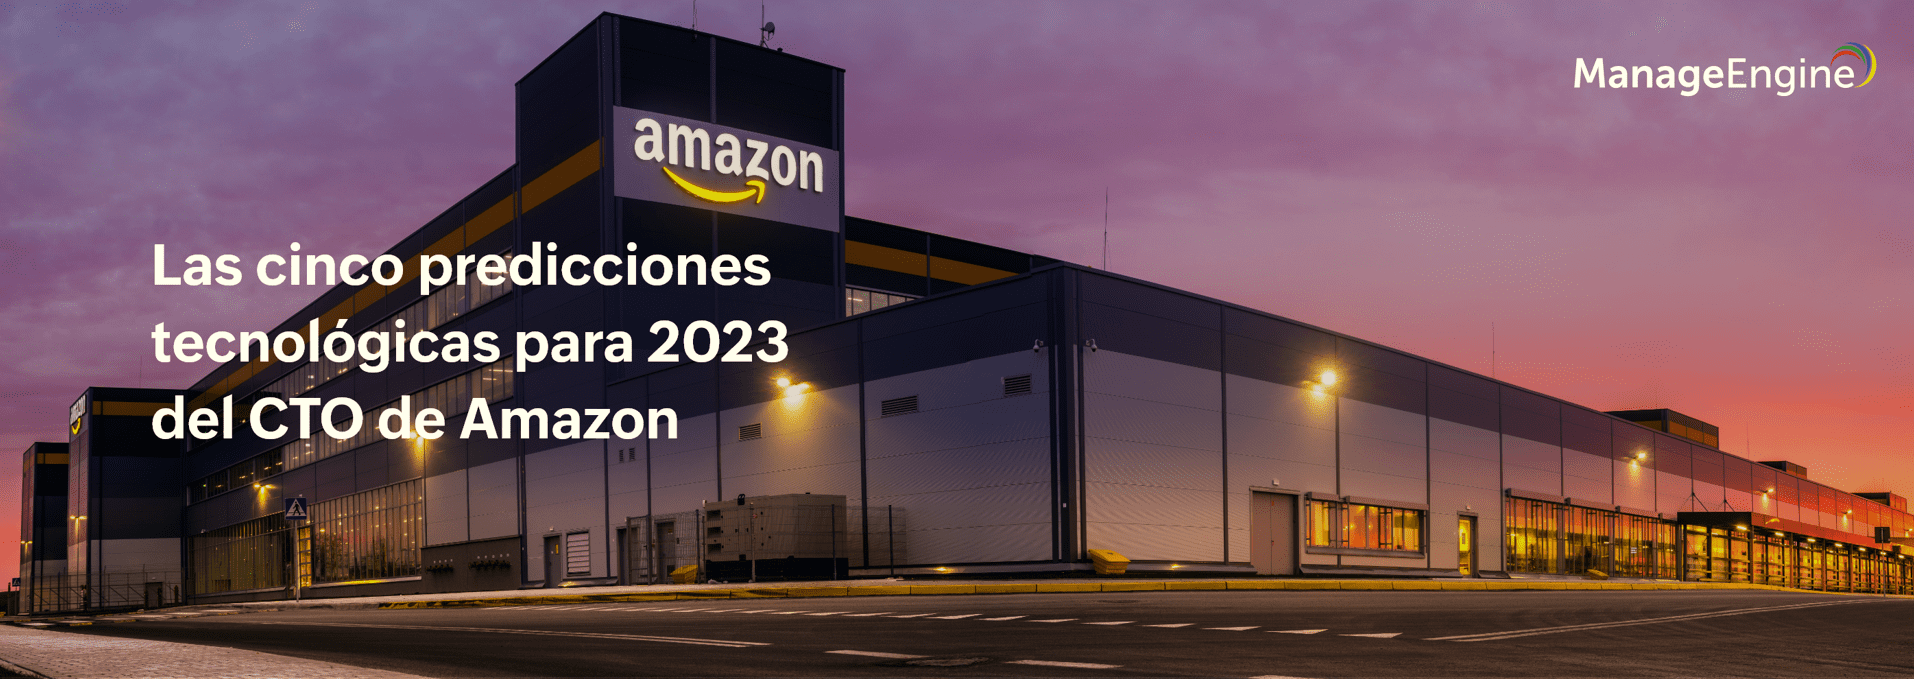 Las cinco predicciones tecnológicas para 2023 del CTO de Amazon